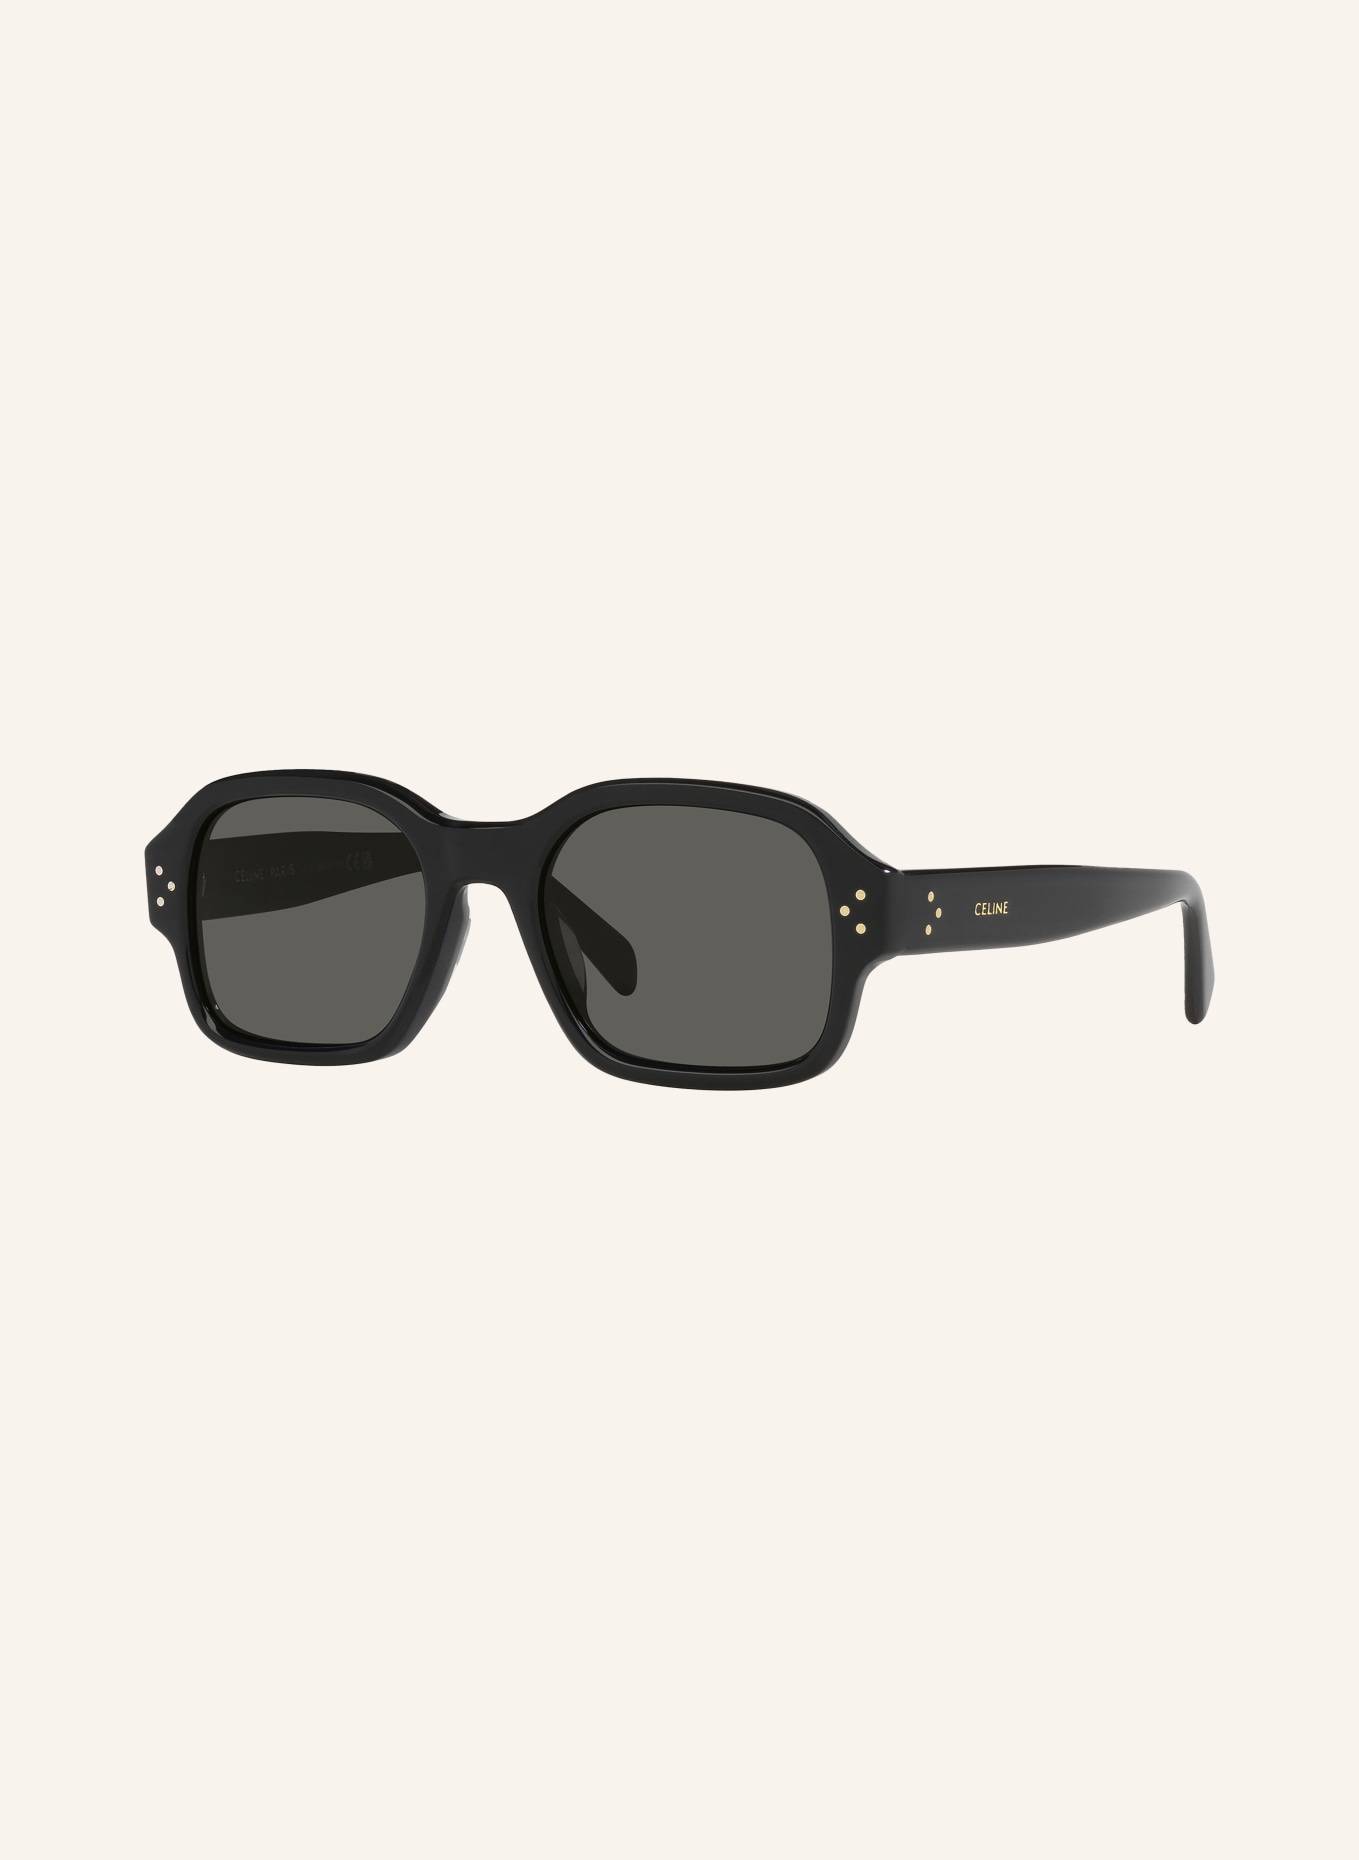 CELINE Sunglasses CL000410 BOLD 3 DOTS, Color: 1100L1 - BLACK/ GRAY (Image 1)